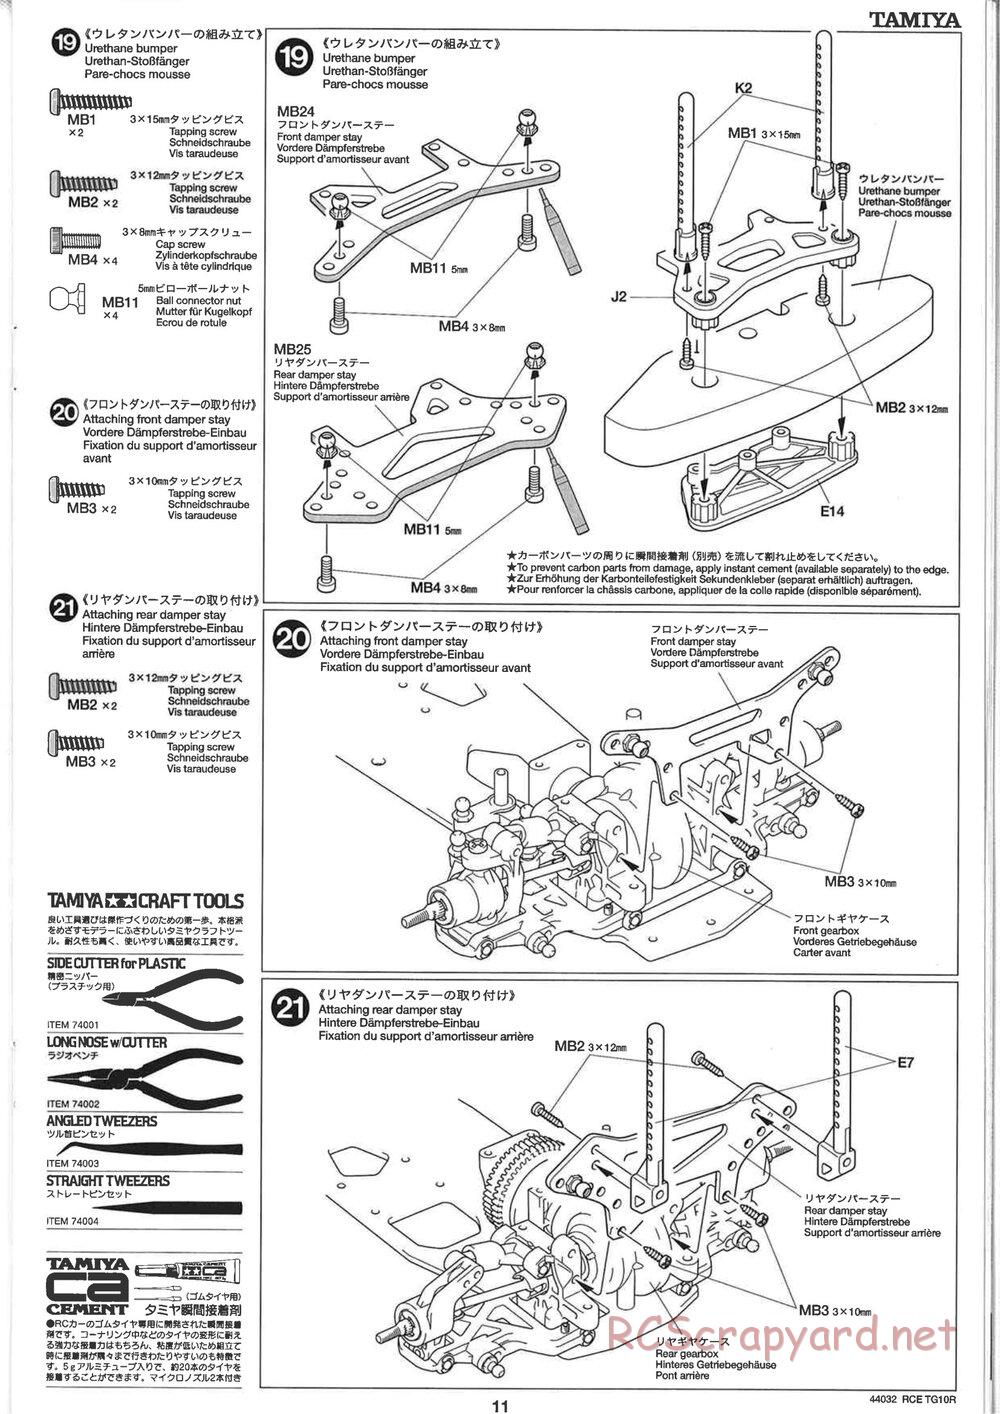 Tamiya - TG10R Chassis - Manual - Page 11